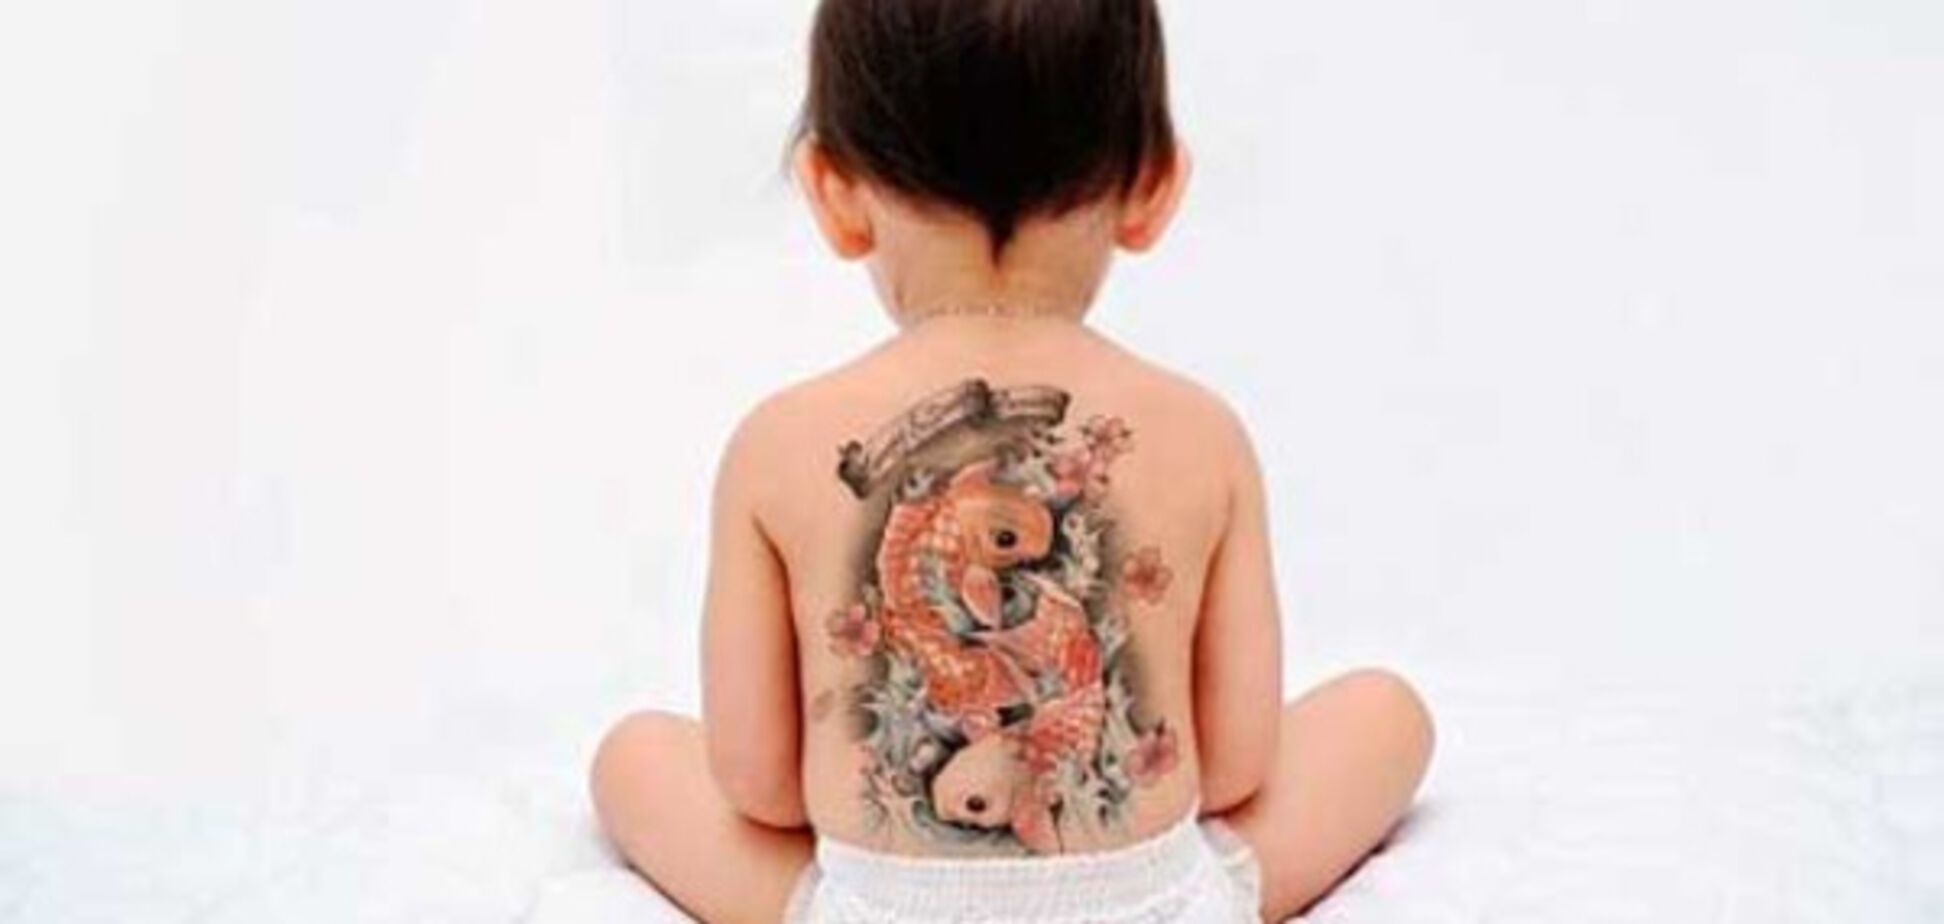 Татуировка в 5 лет: в сети критикуют нерадивую мать